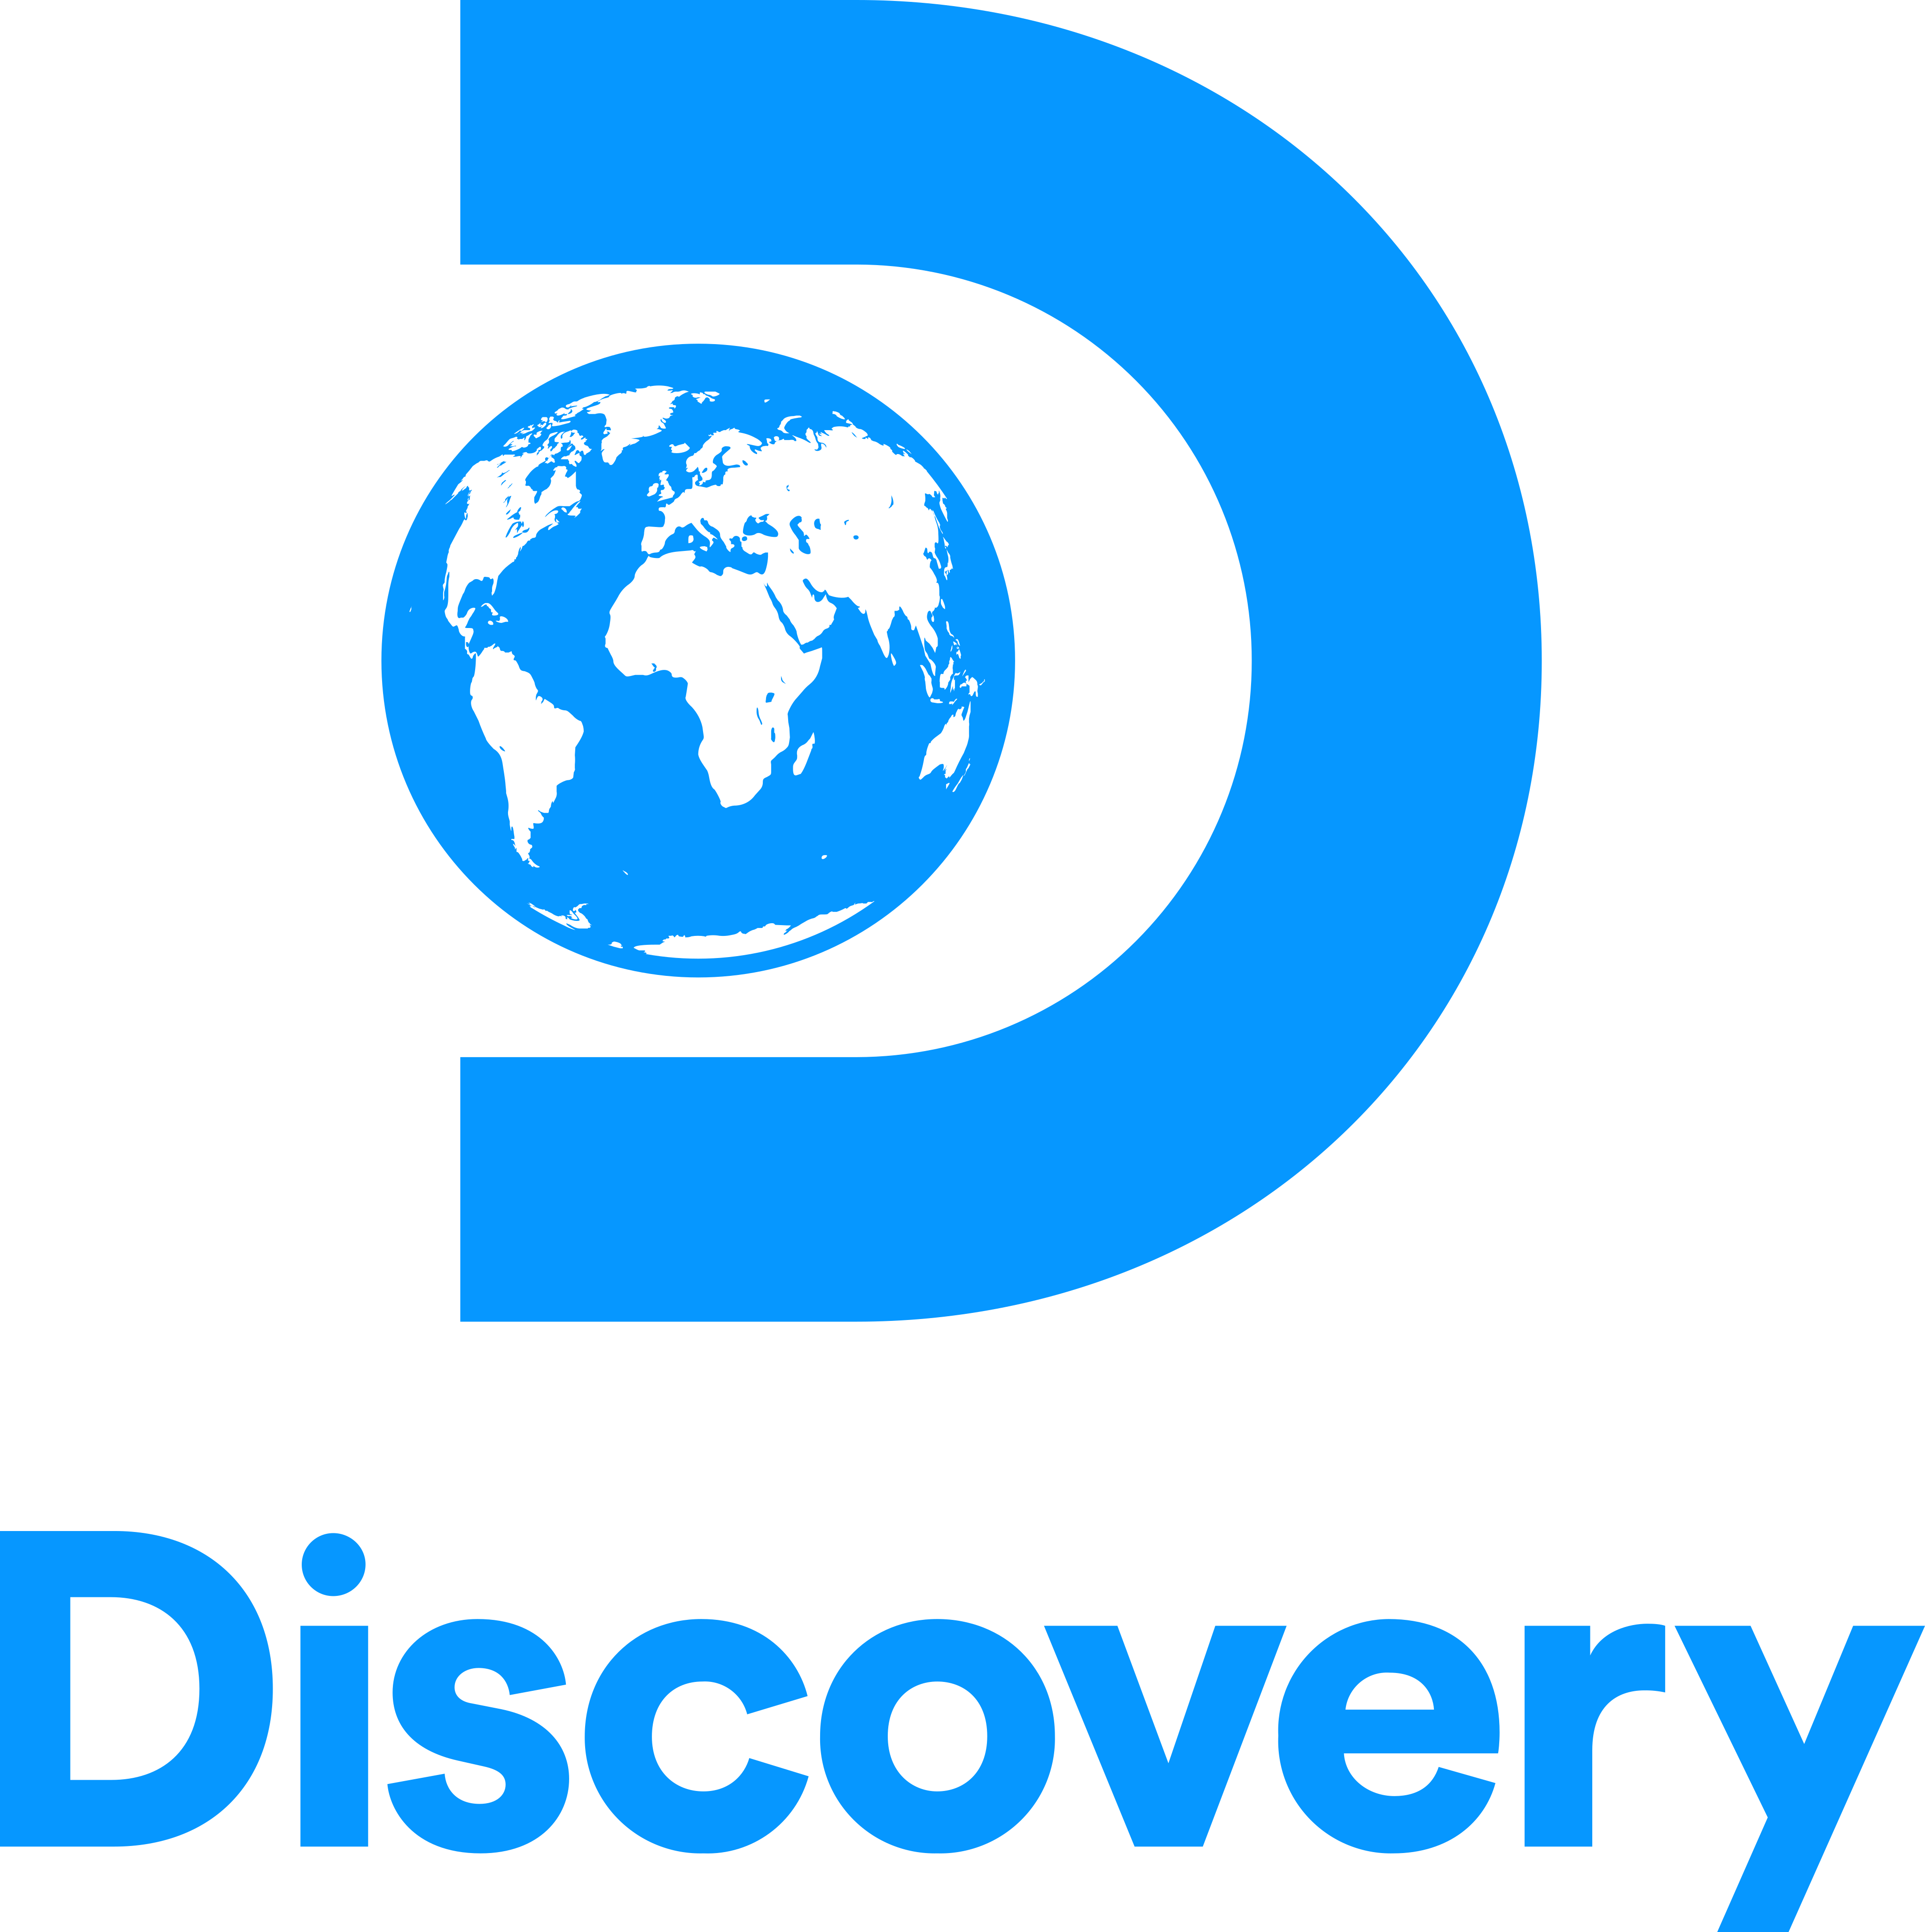 discovery channel logo 1 1 - Discovery Channel Logo